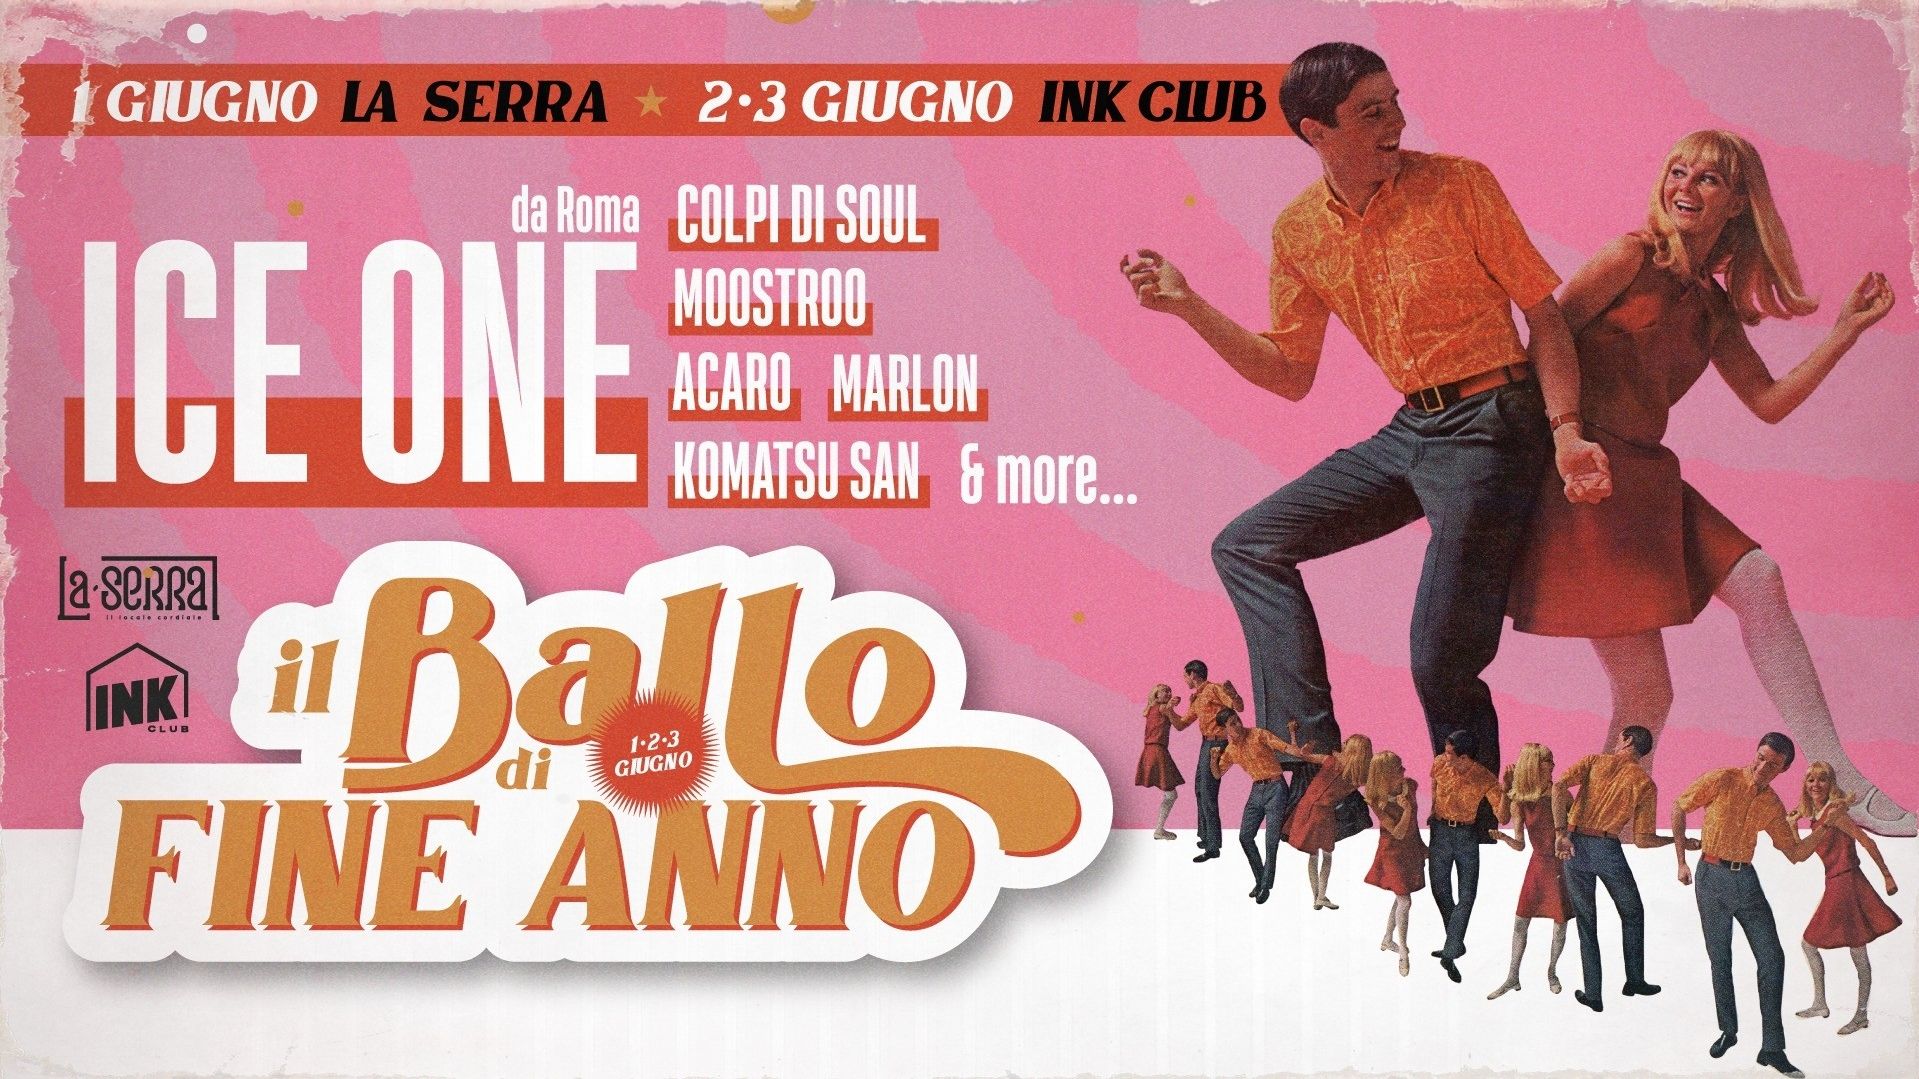 Il Ballo di Fine Anno - Ice One, Colpi Di Soul, Moostroo, Acaro & more